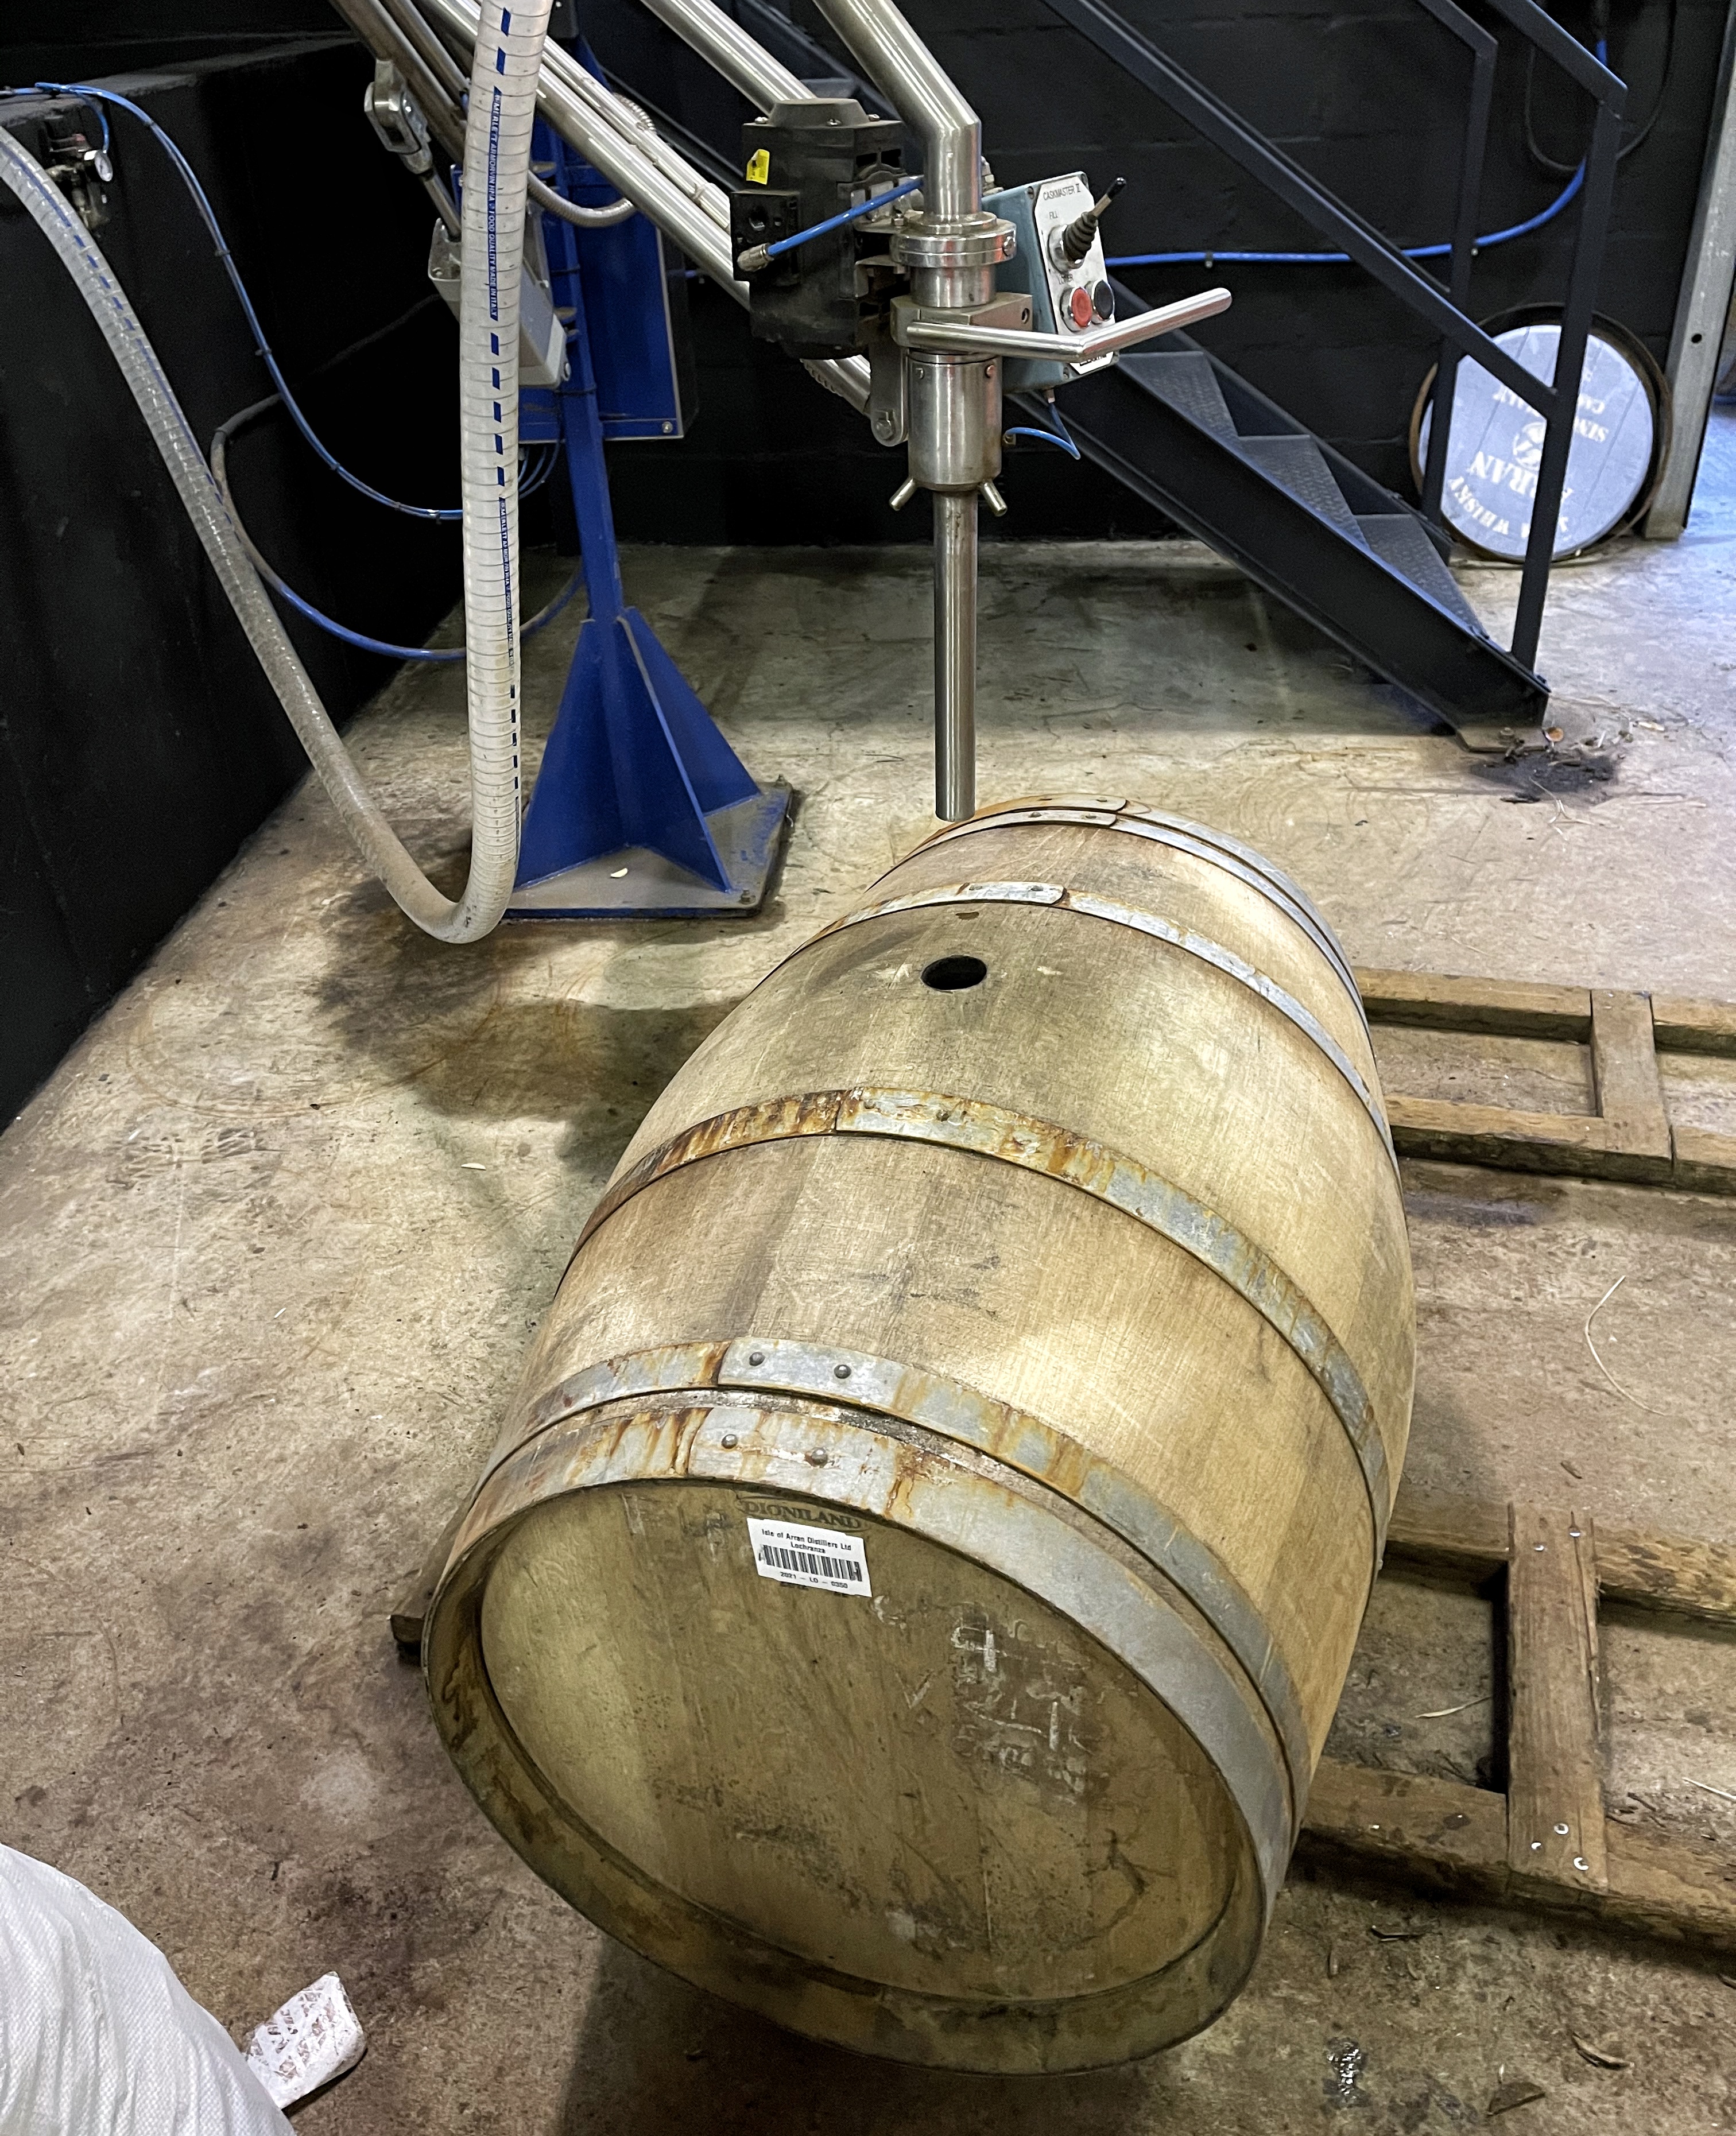 Lochranza Calvados cask being filled